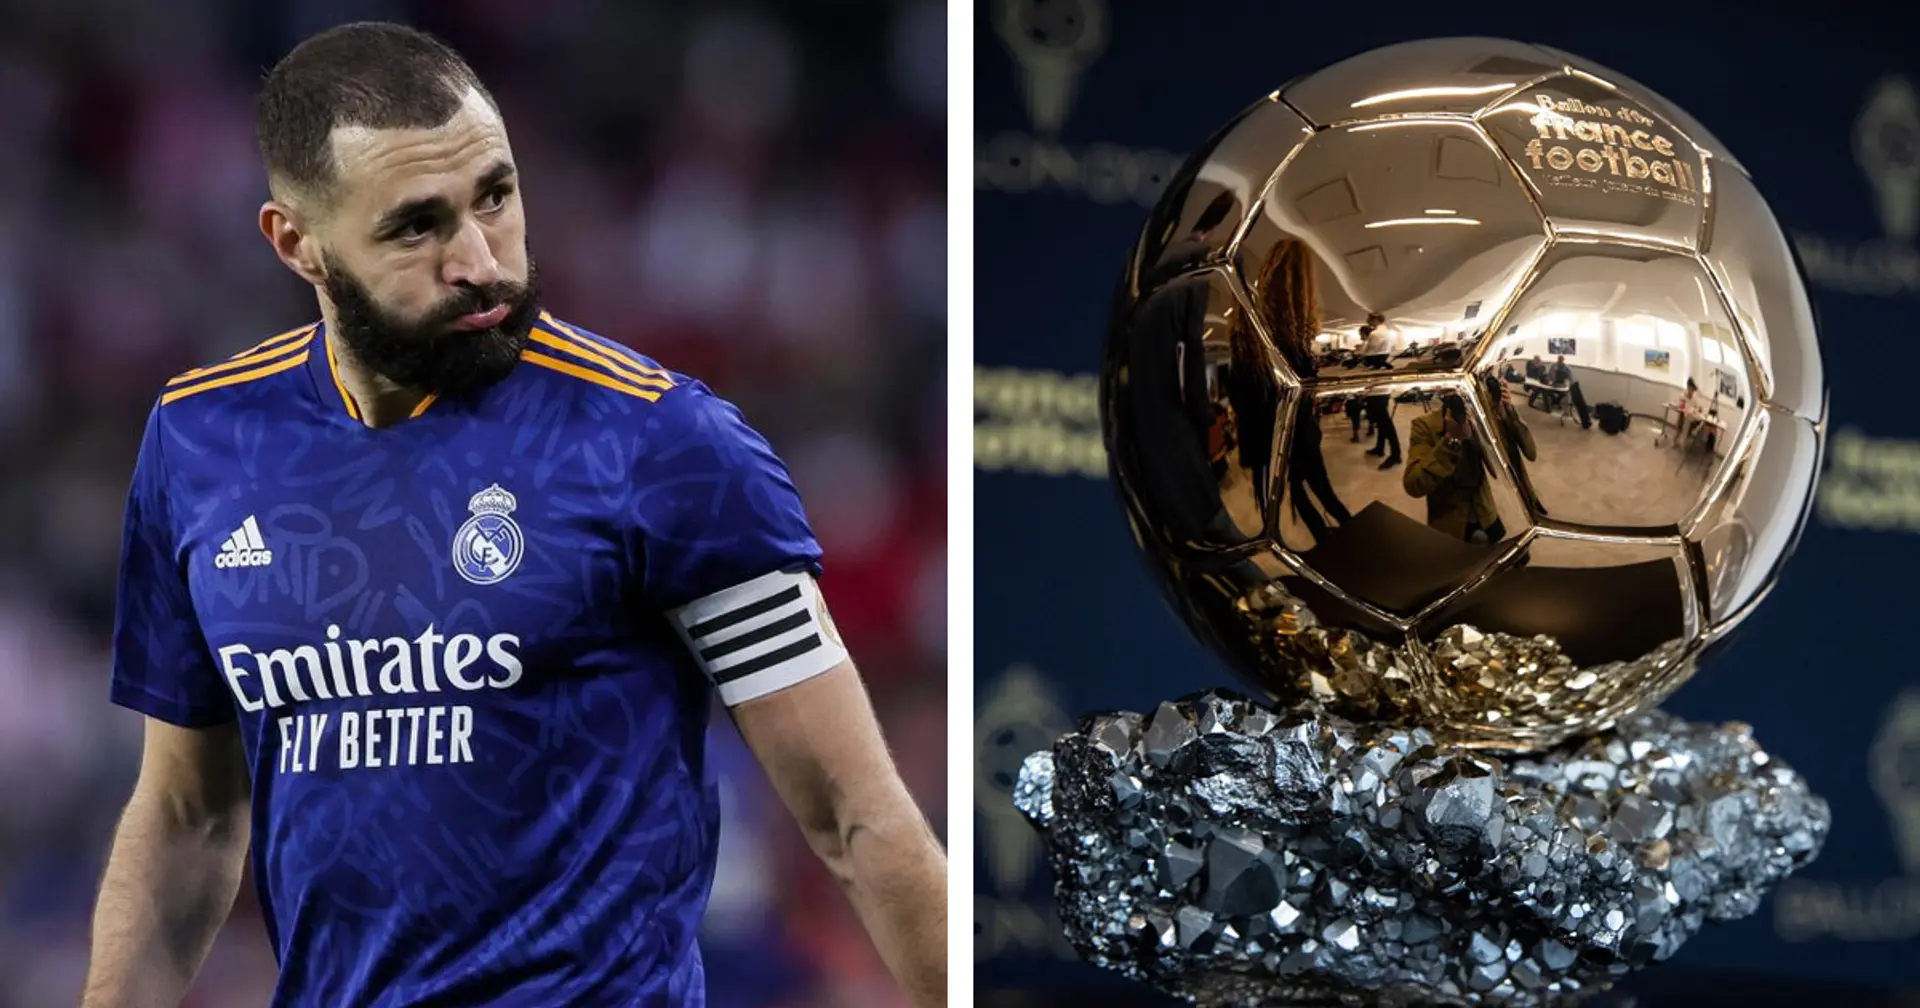 Ballon d'Or: Modric 29e, Benzema 4e sur la liste finale du top 30